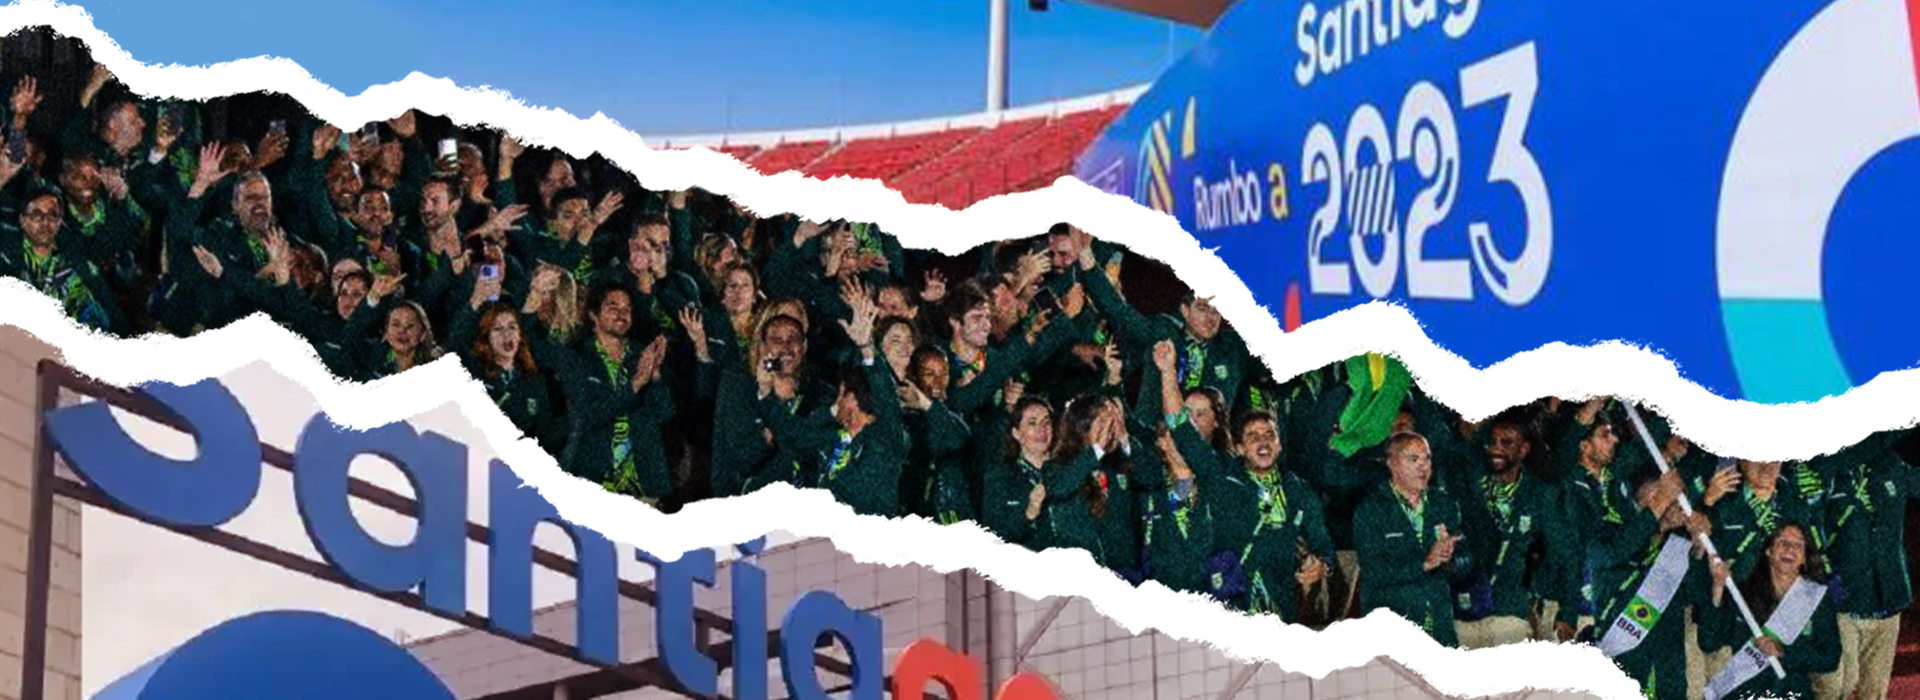 Importância do CBC para o resultado do Brasil nos Jogos Pan-Americanos vira pauta na mídia brasileira 